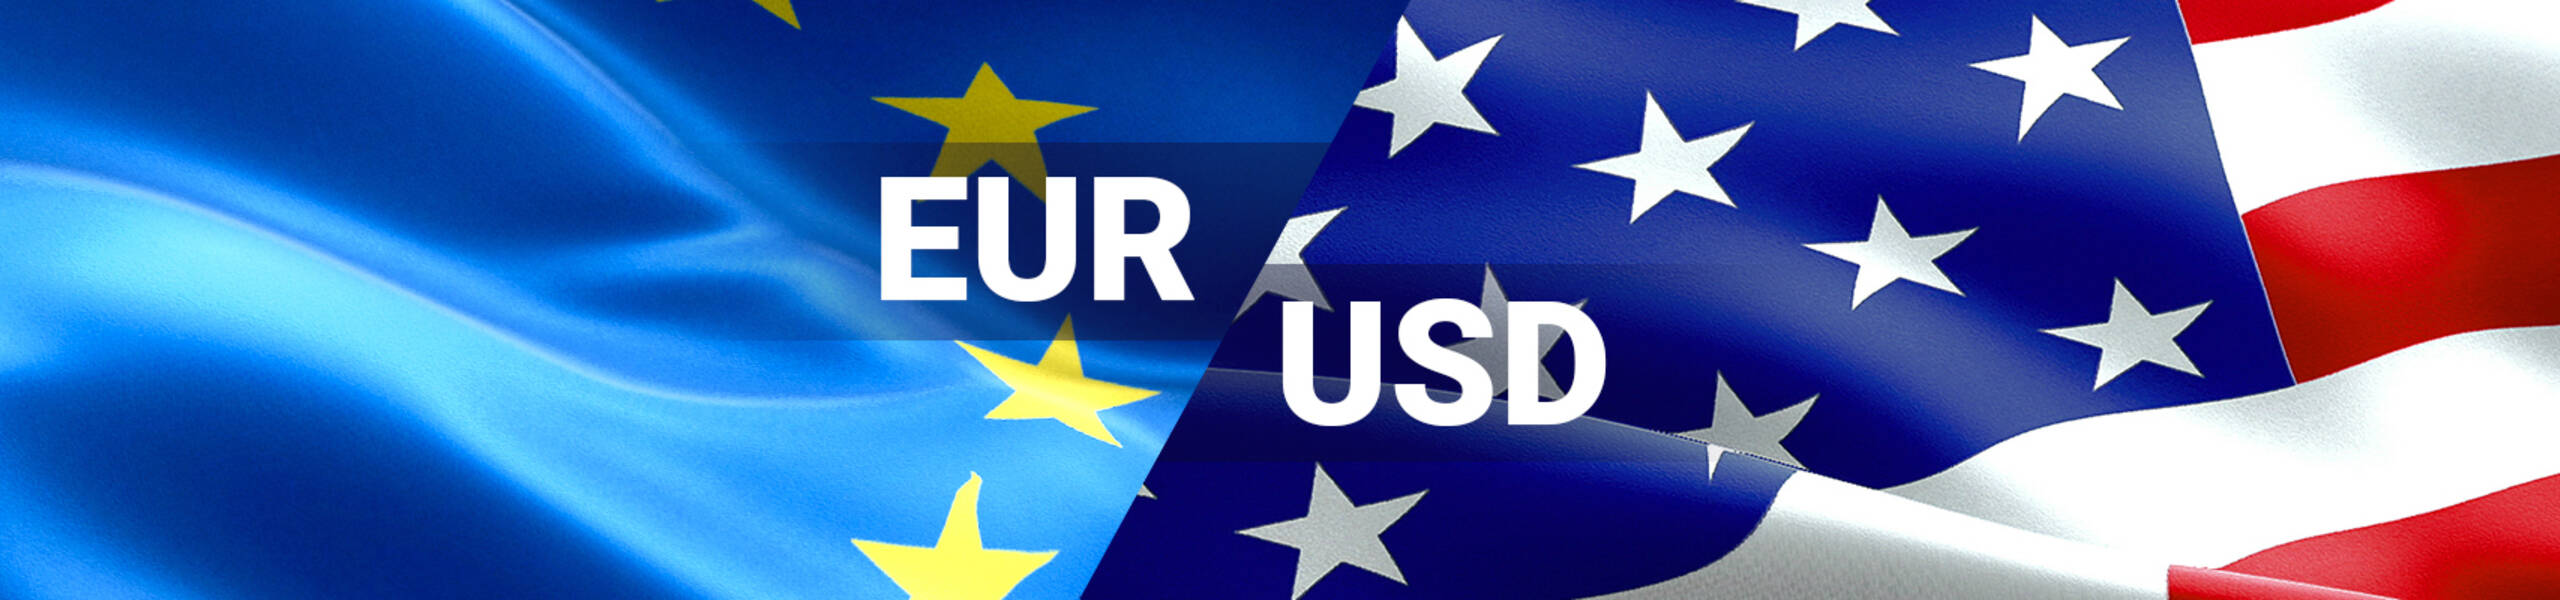 EUR/USD: niveles de interés en 1.1405 y 1.1350